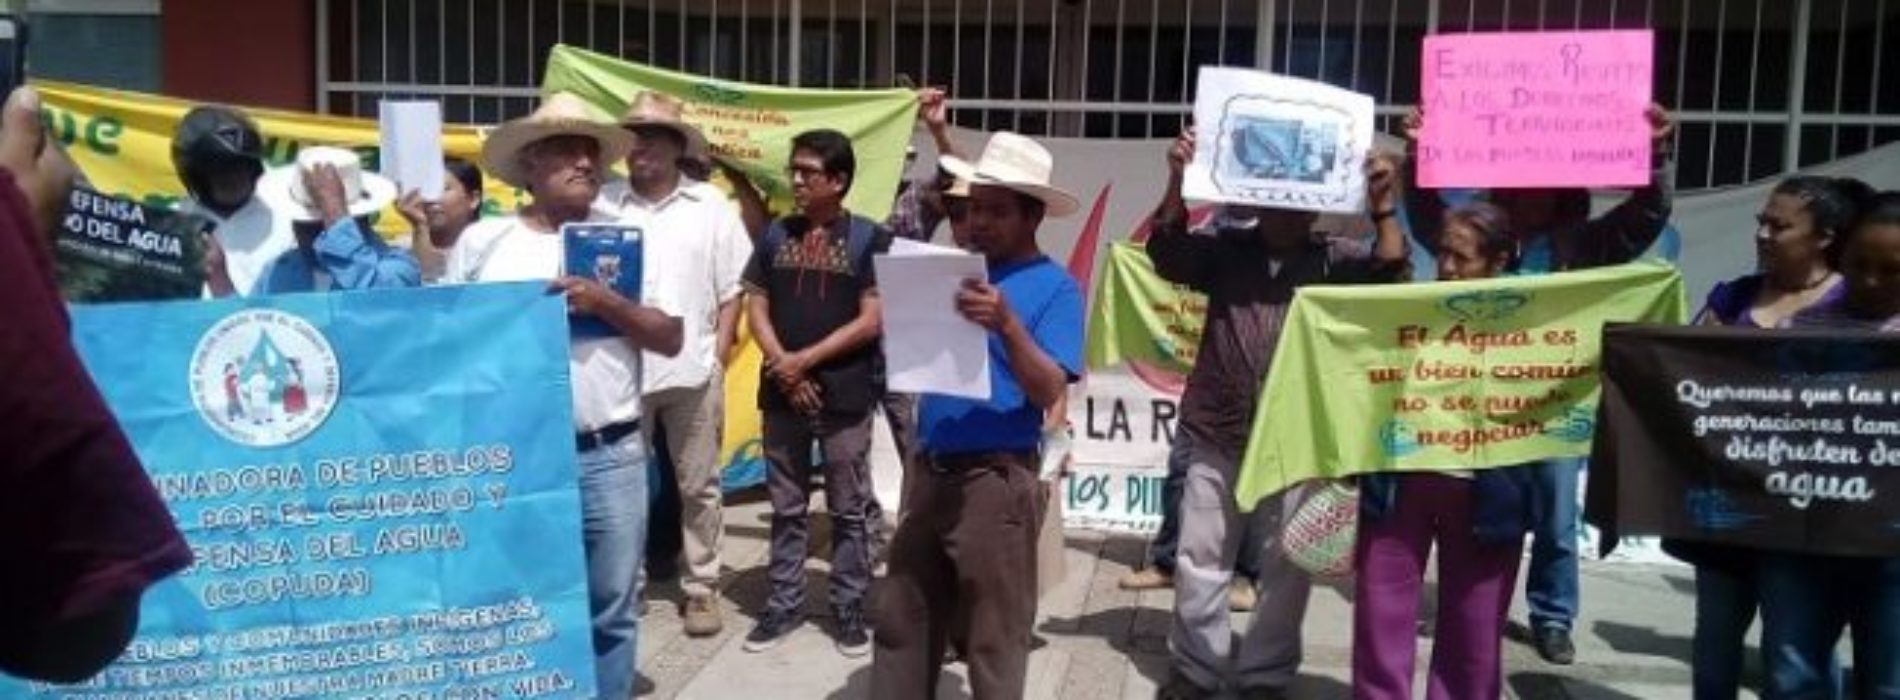 En CONAGUA activistas de COPUDA exigen su libre derecho al
agua